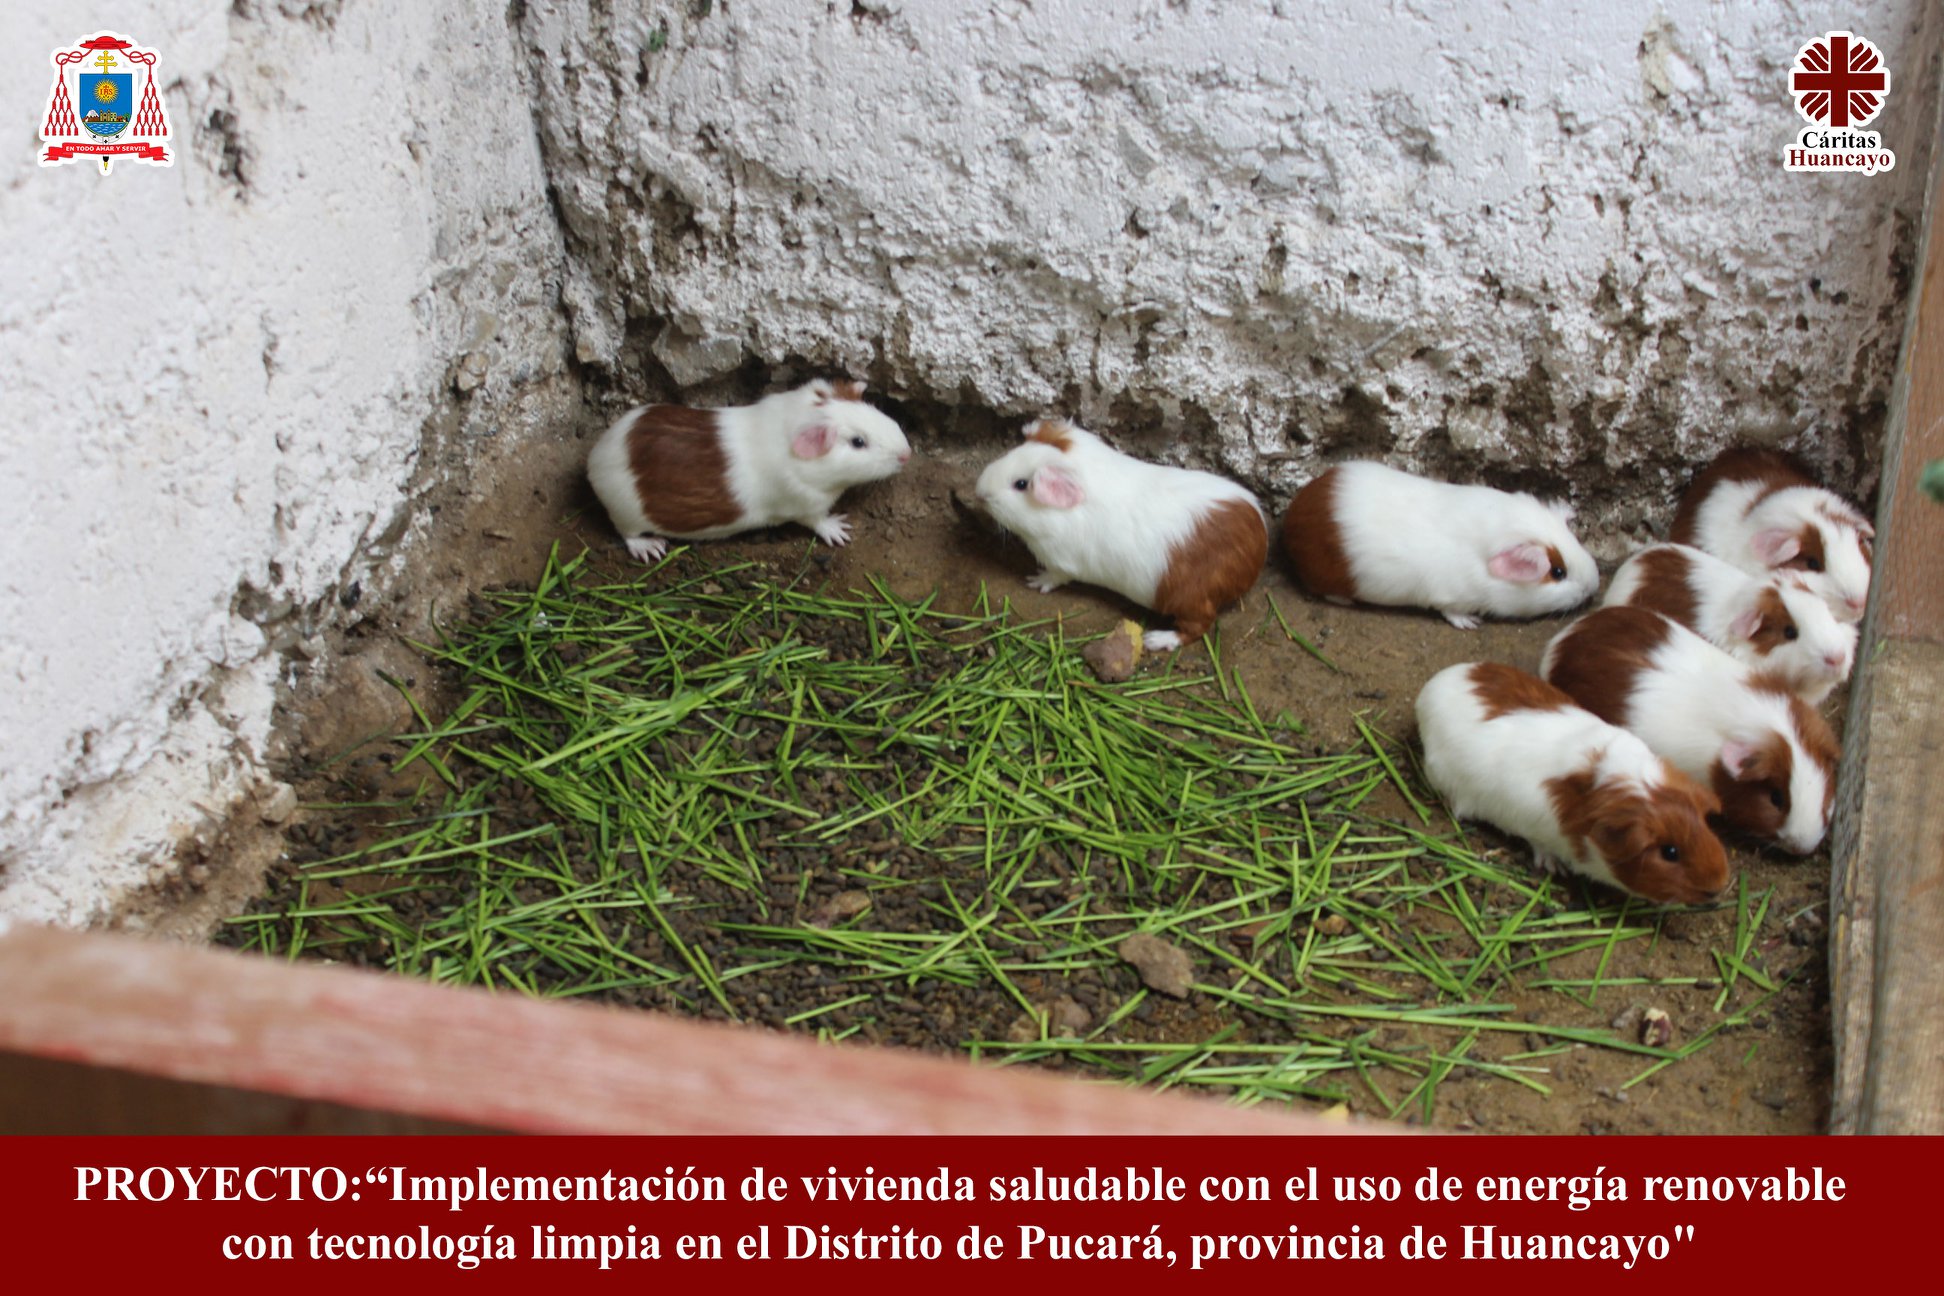 Implementación de vivienda saludable con el uso de energía renovable con tecnología limpia en el Distrito de Pucará, Provincia de Huancayo